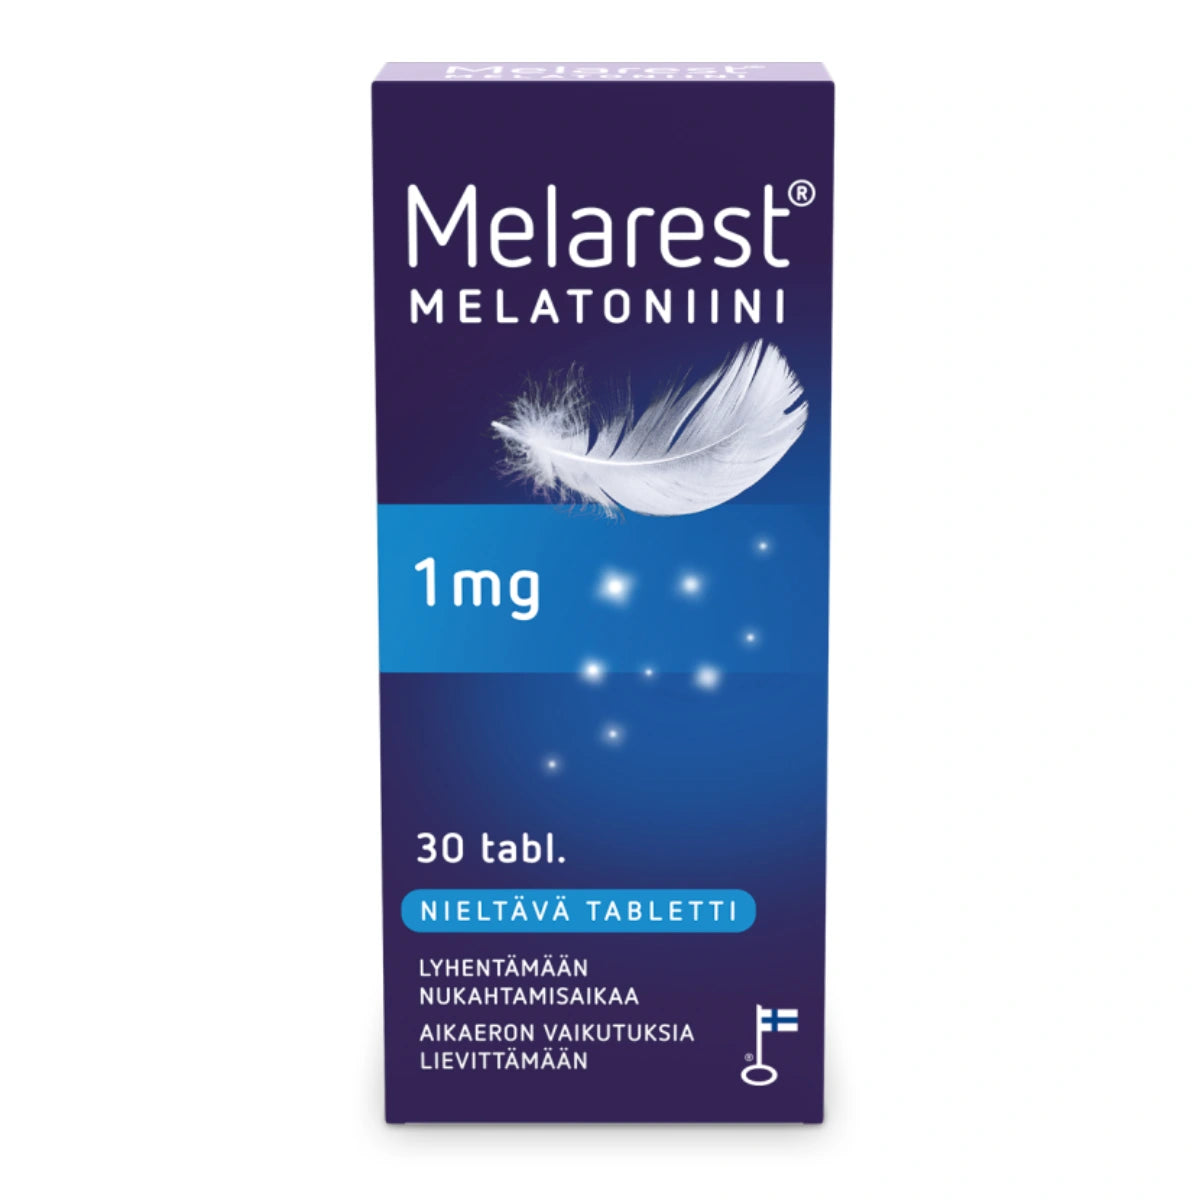 MELAREST Melatoniini 1 mg nieltävä tabletti 30 kpl aikaeron vaikutuksia lievittämään